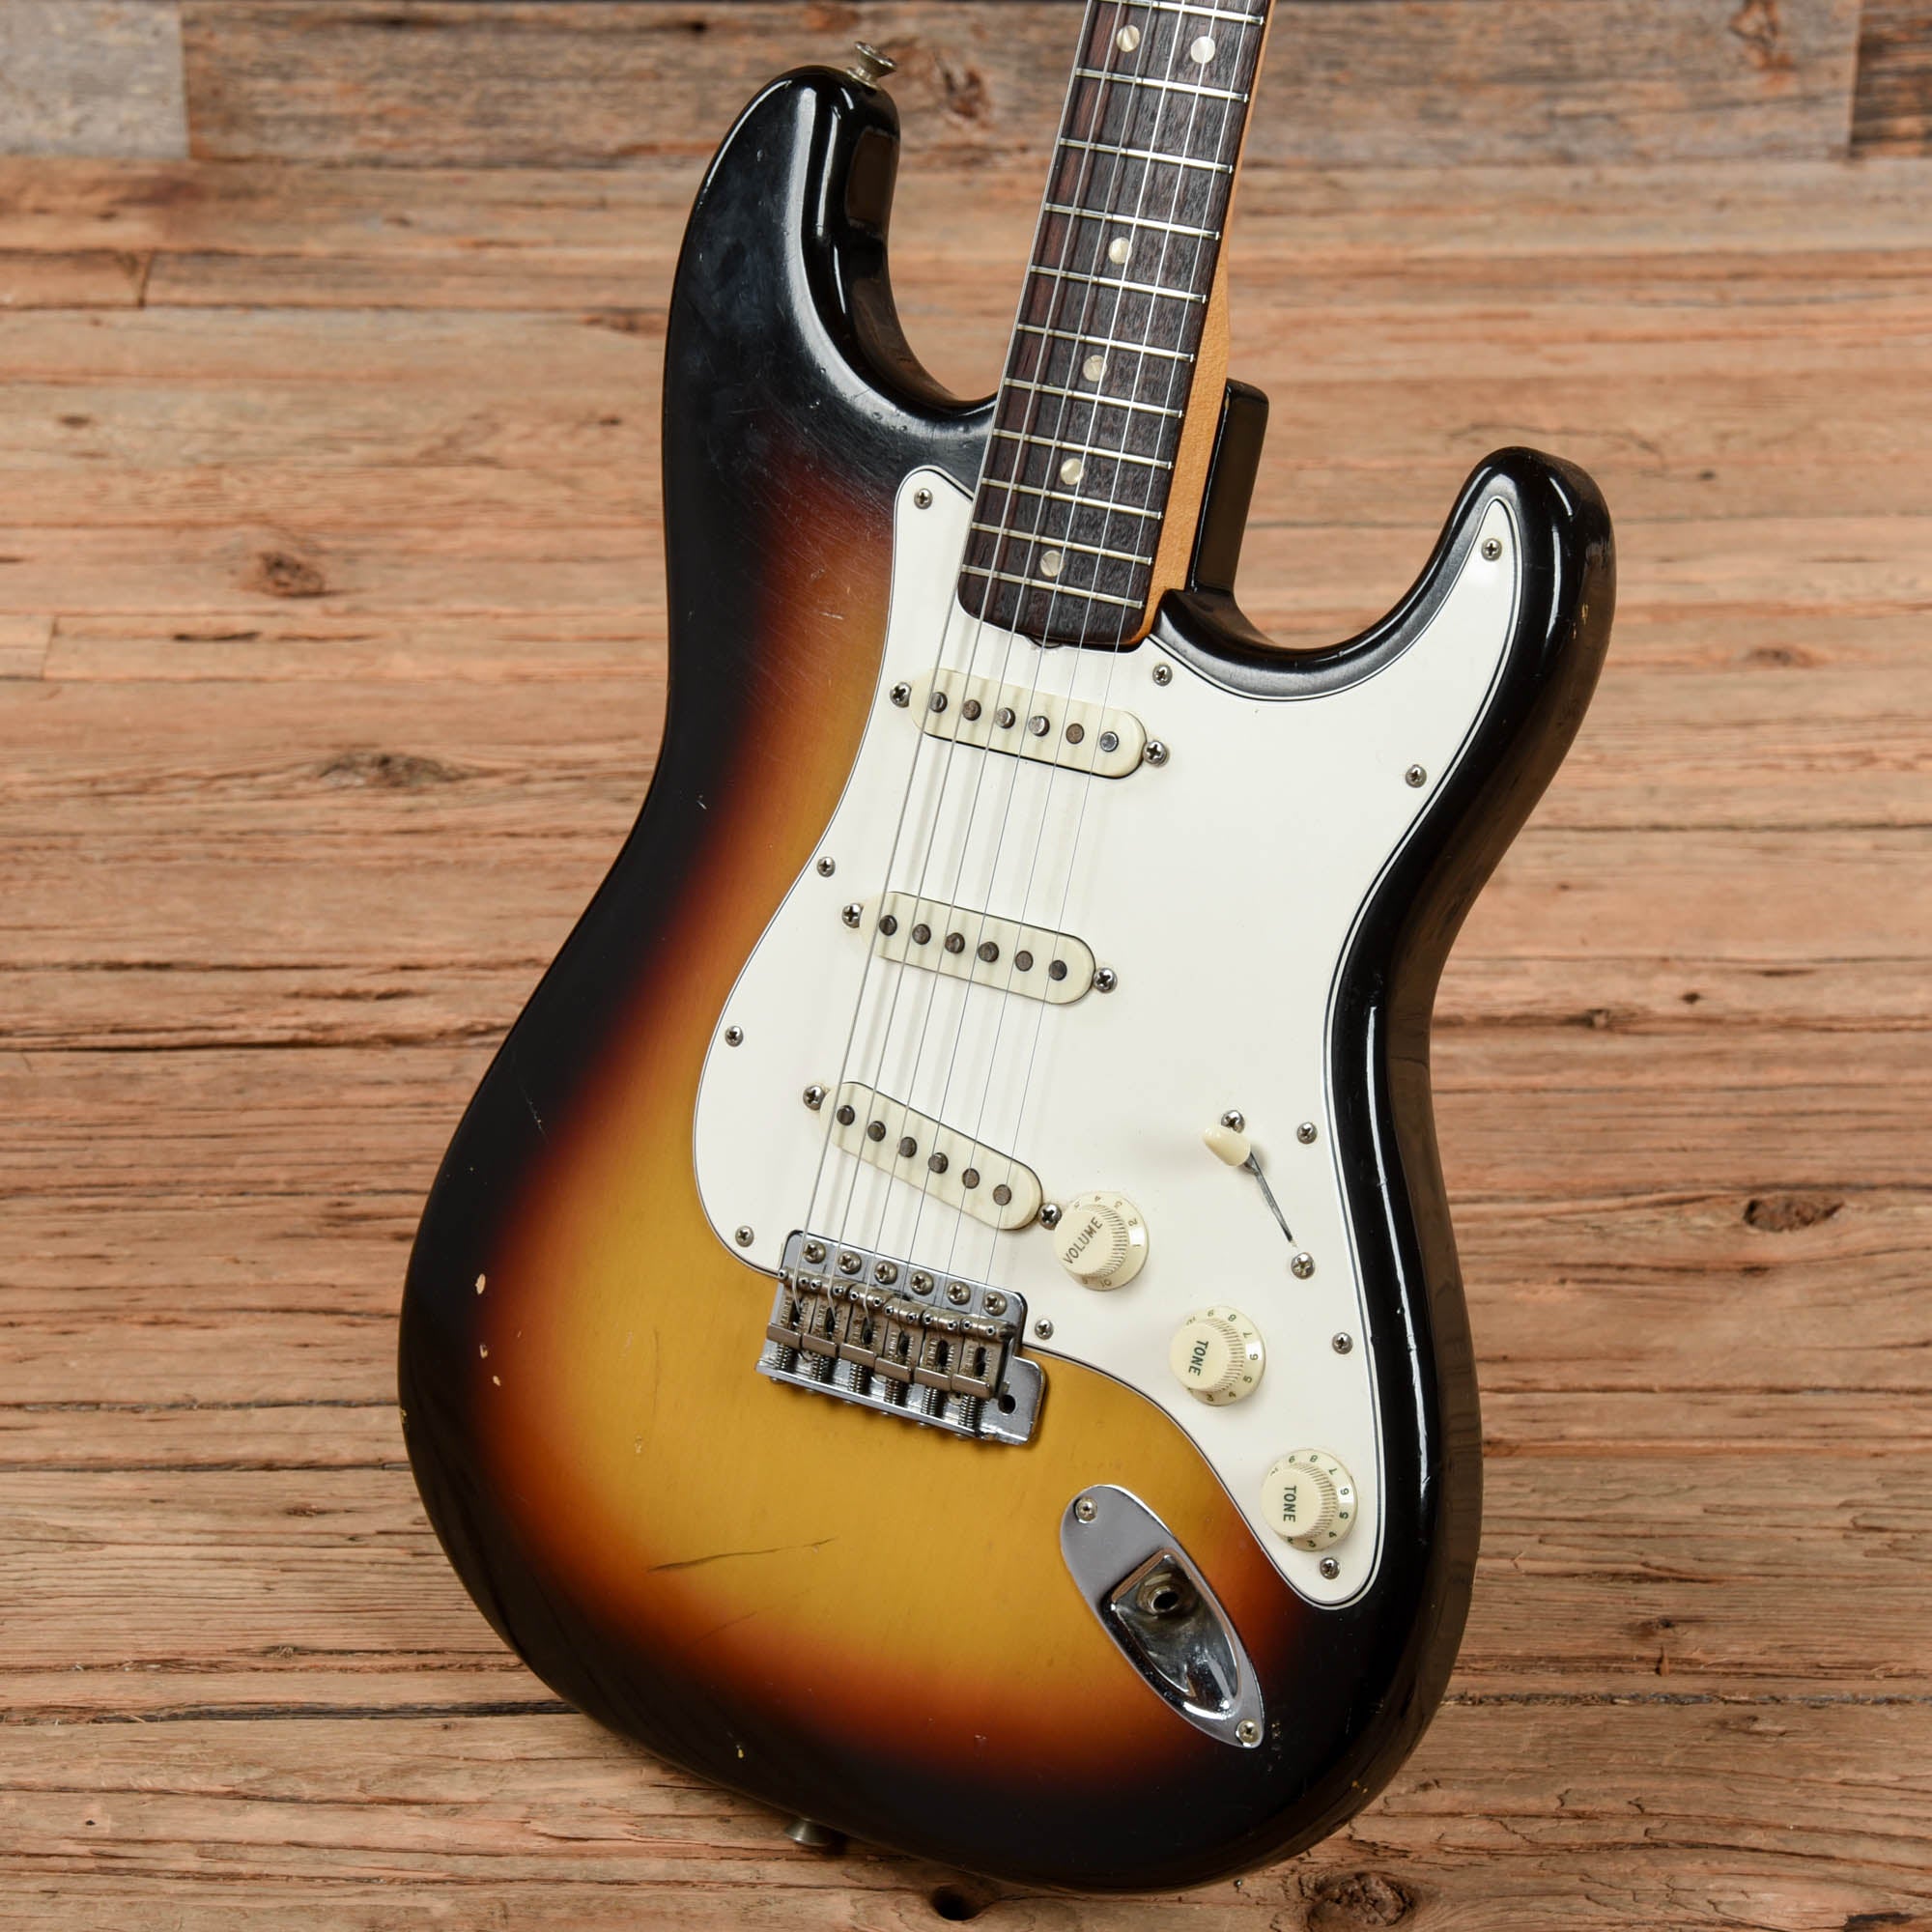 Fender Stratocaster Sunburst 1966